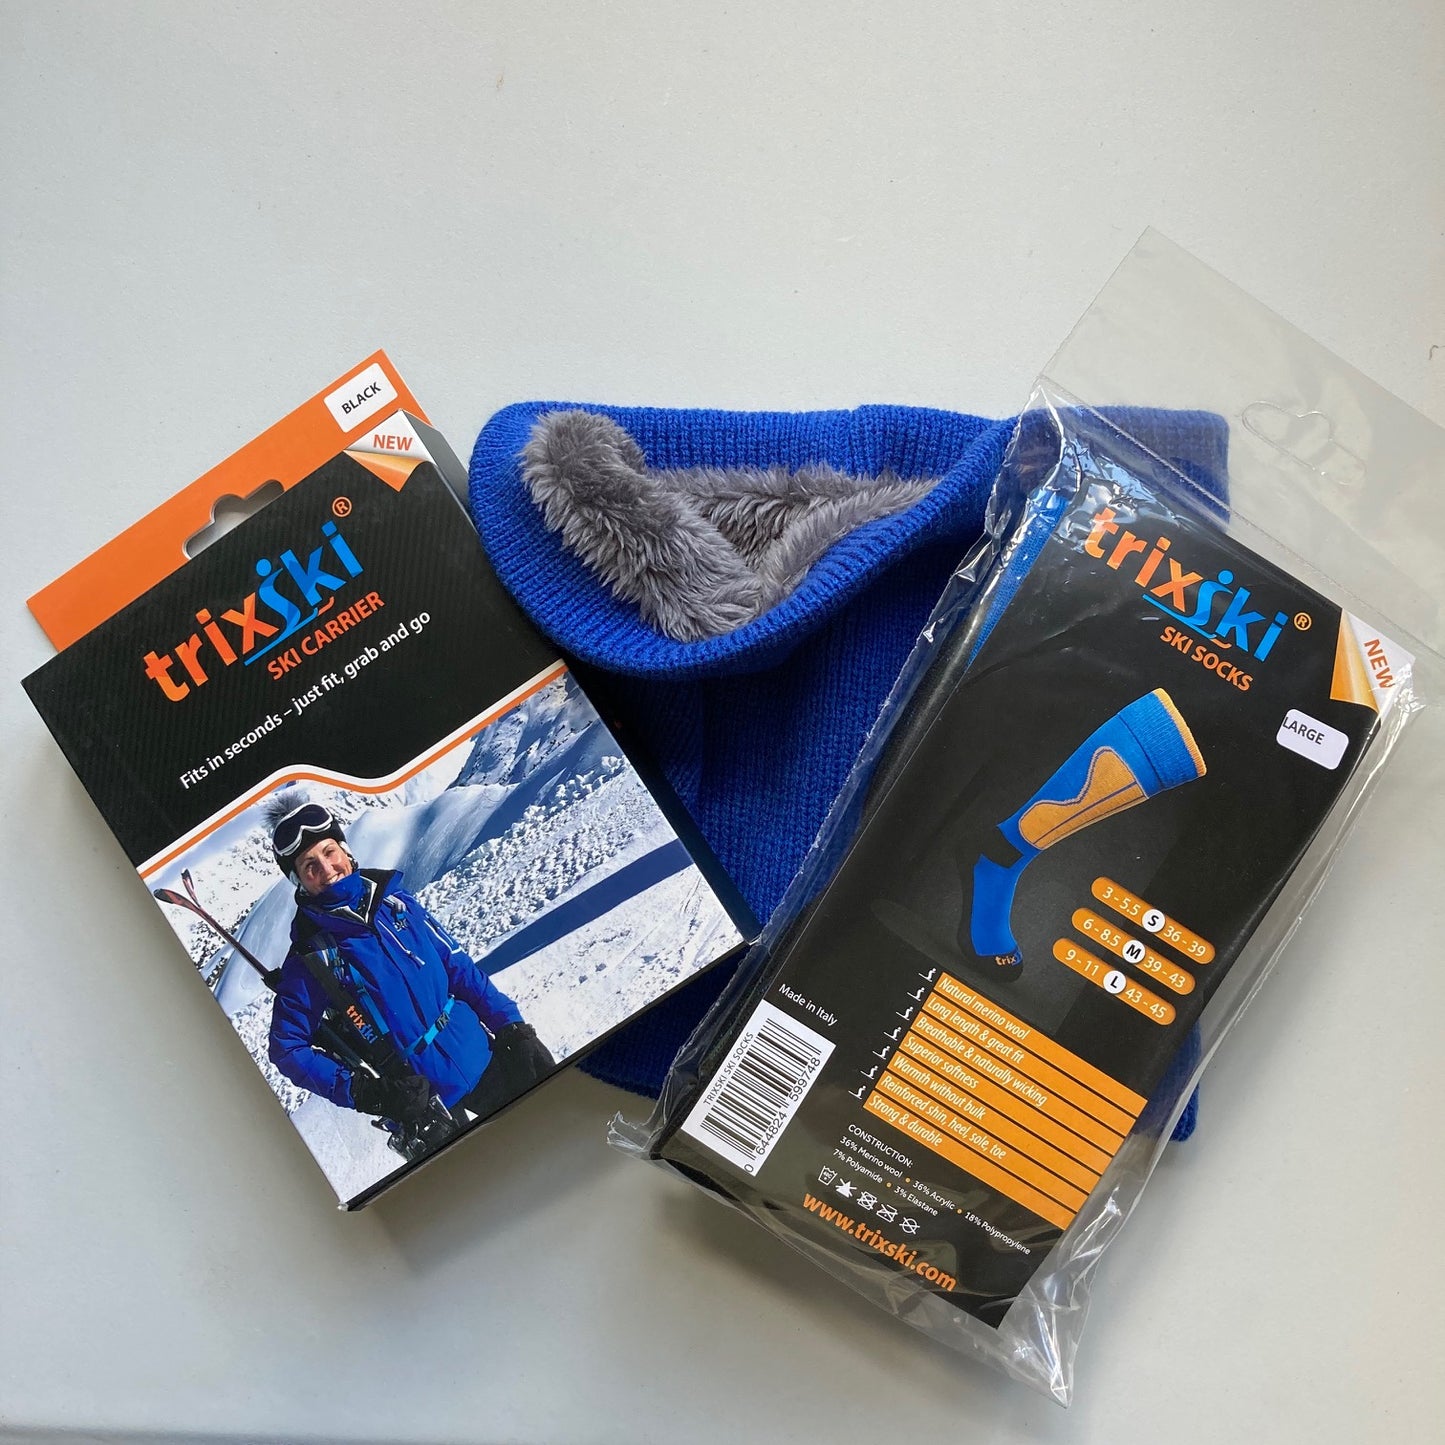 New skier's starter pack items: ski carrier, ski socks and neck warmer